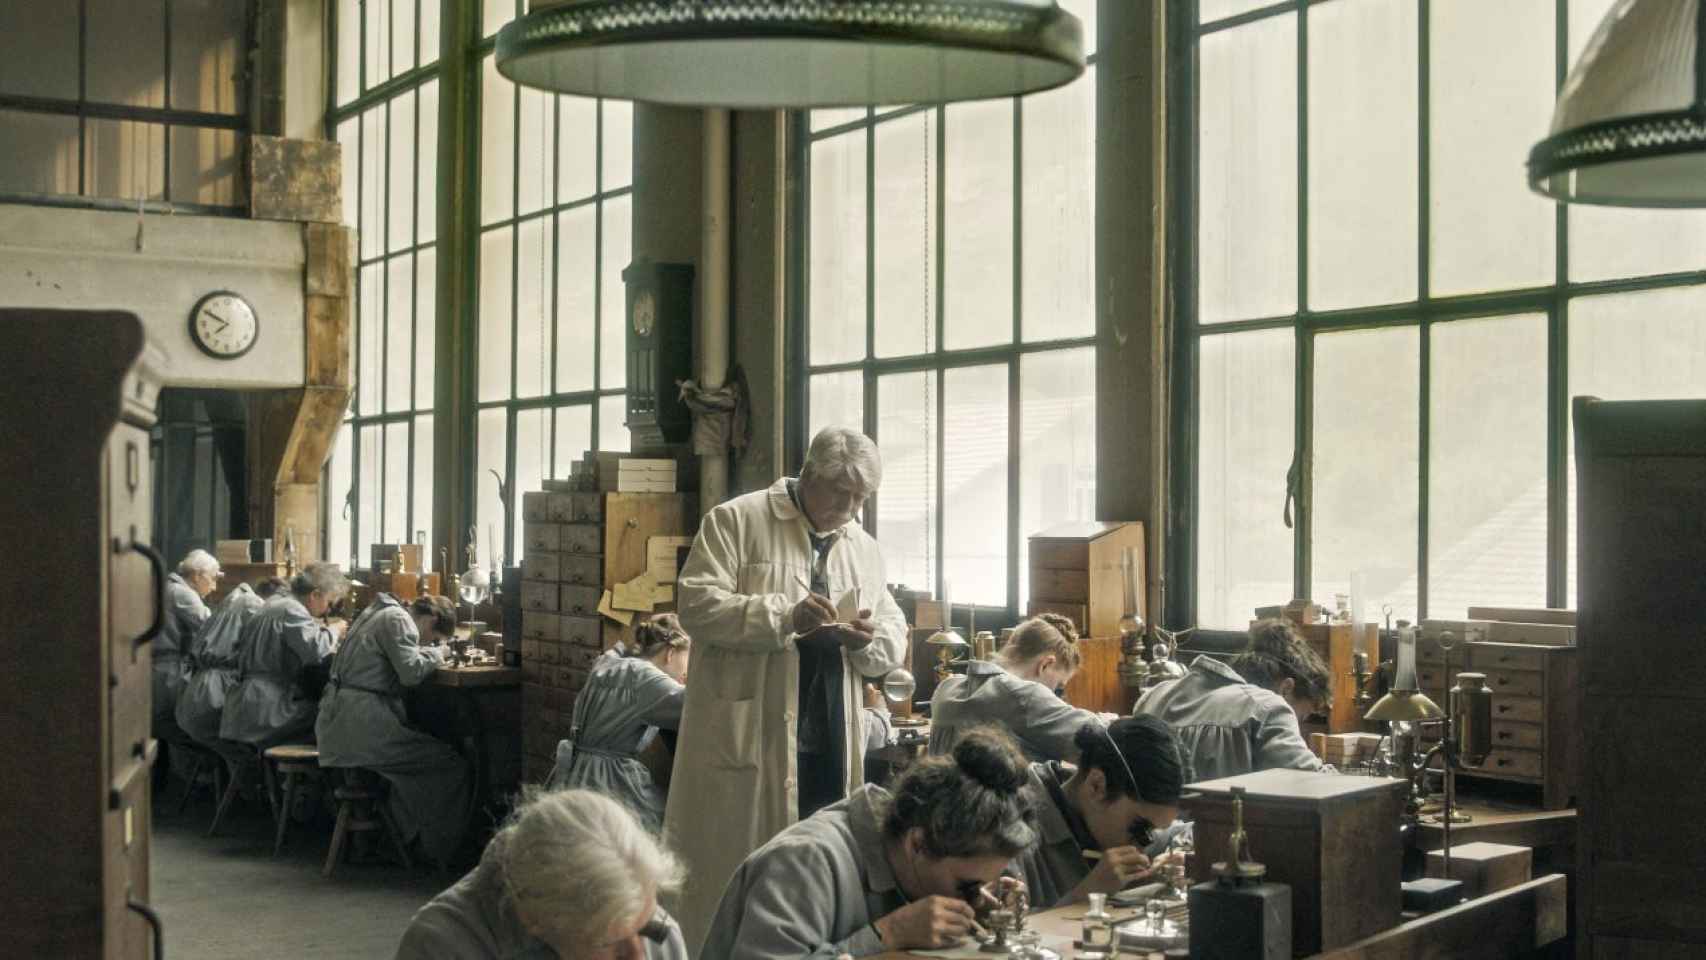 Vista general de la fábrica de relojes en la que se desarrolla 'Disturbios'